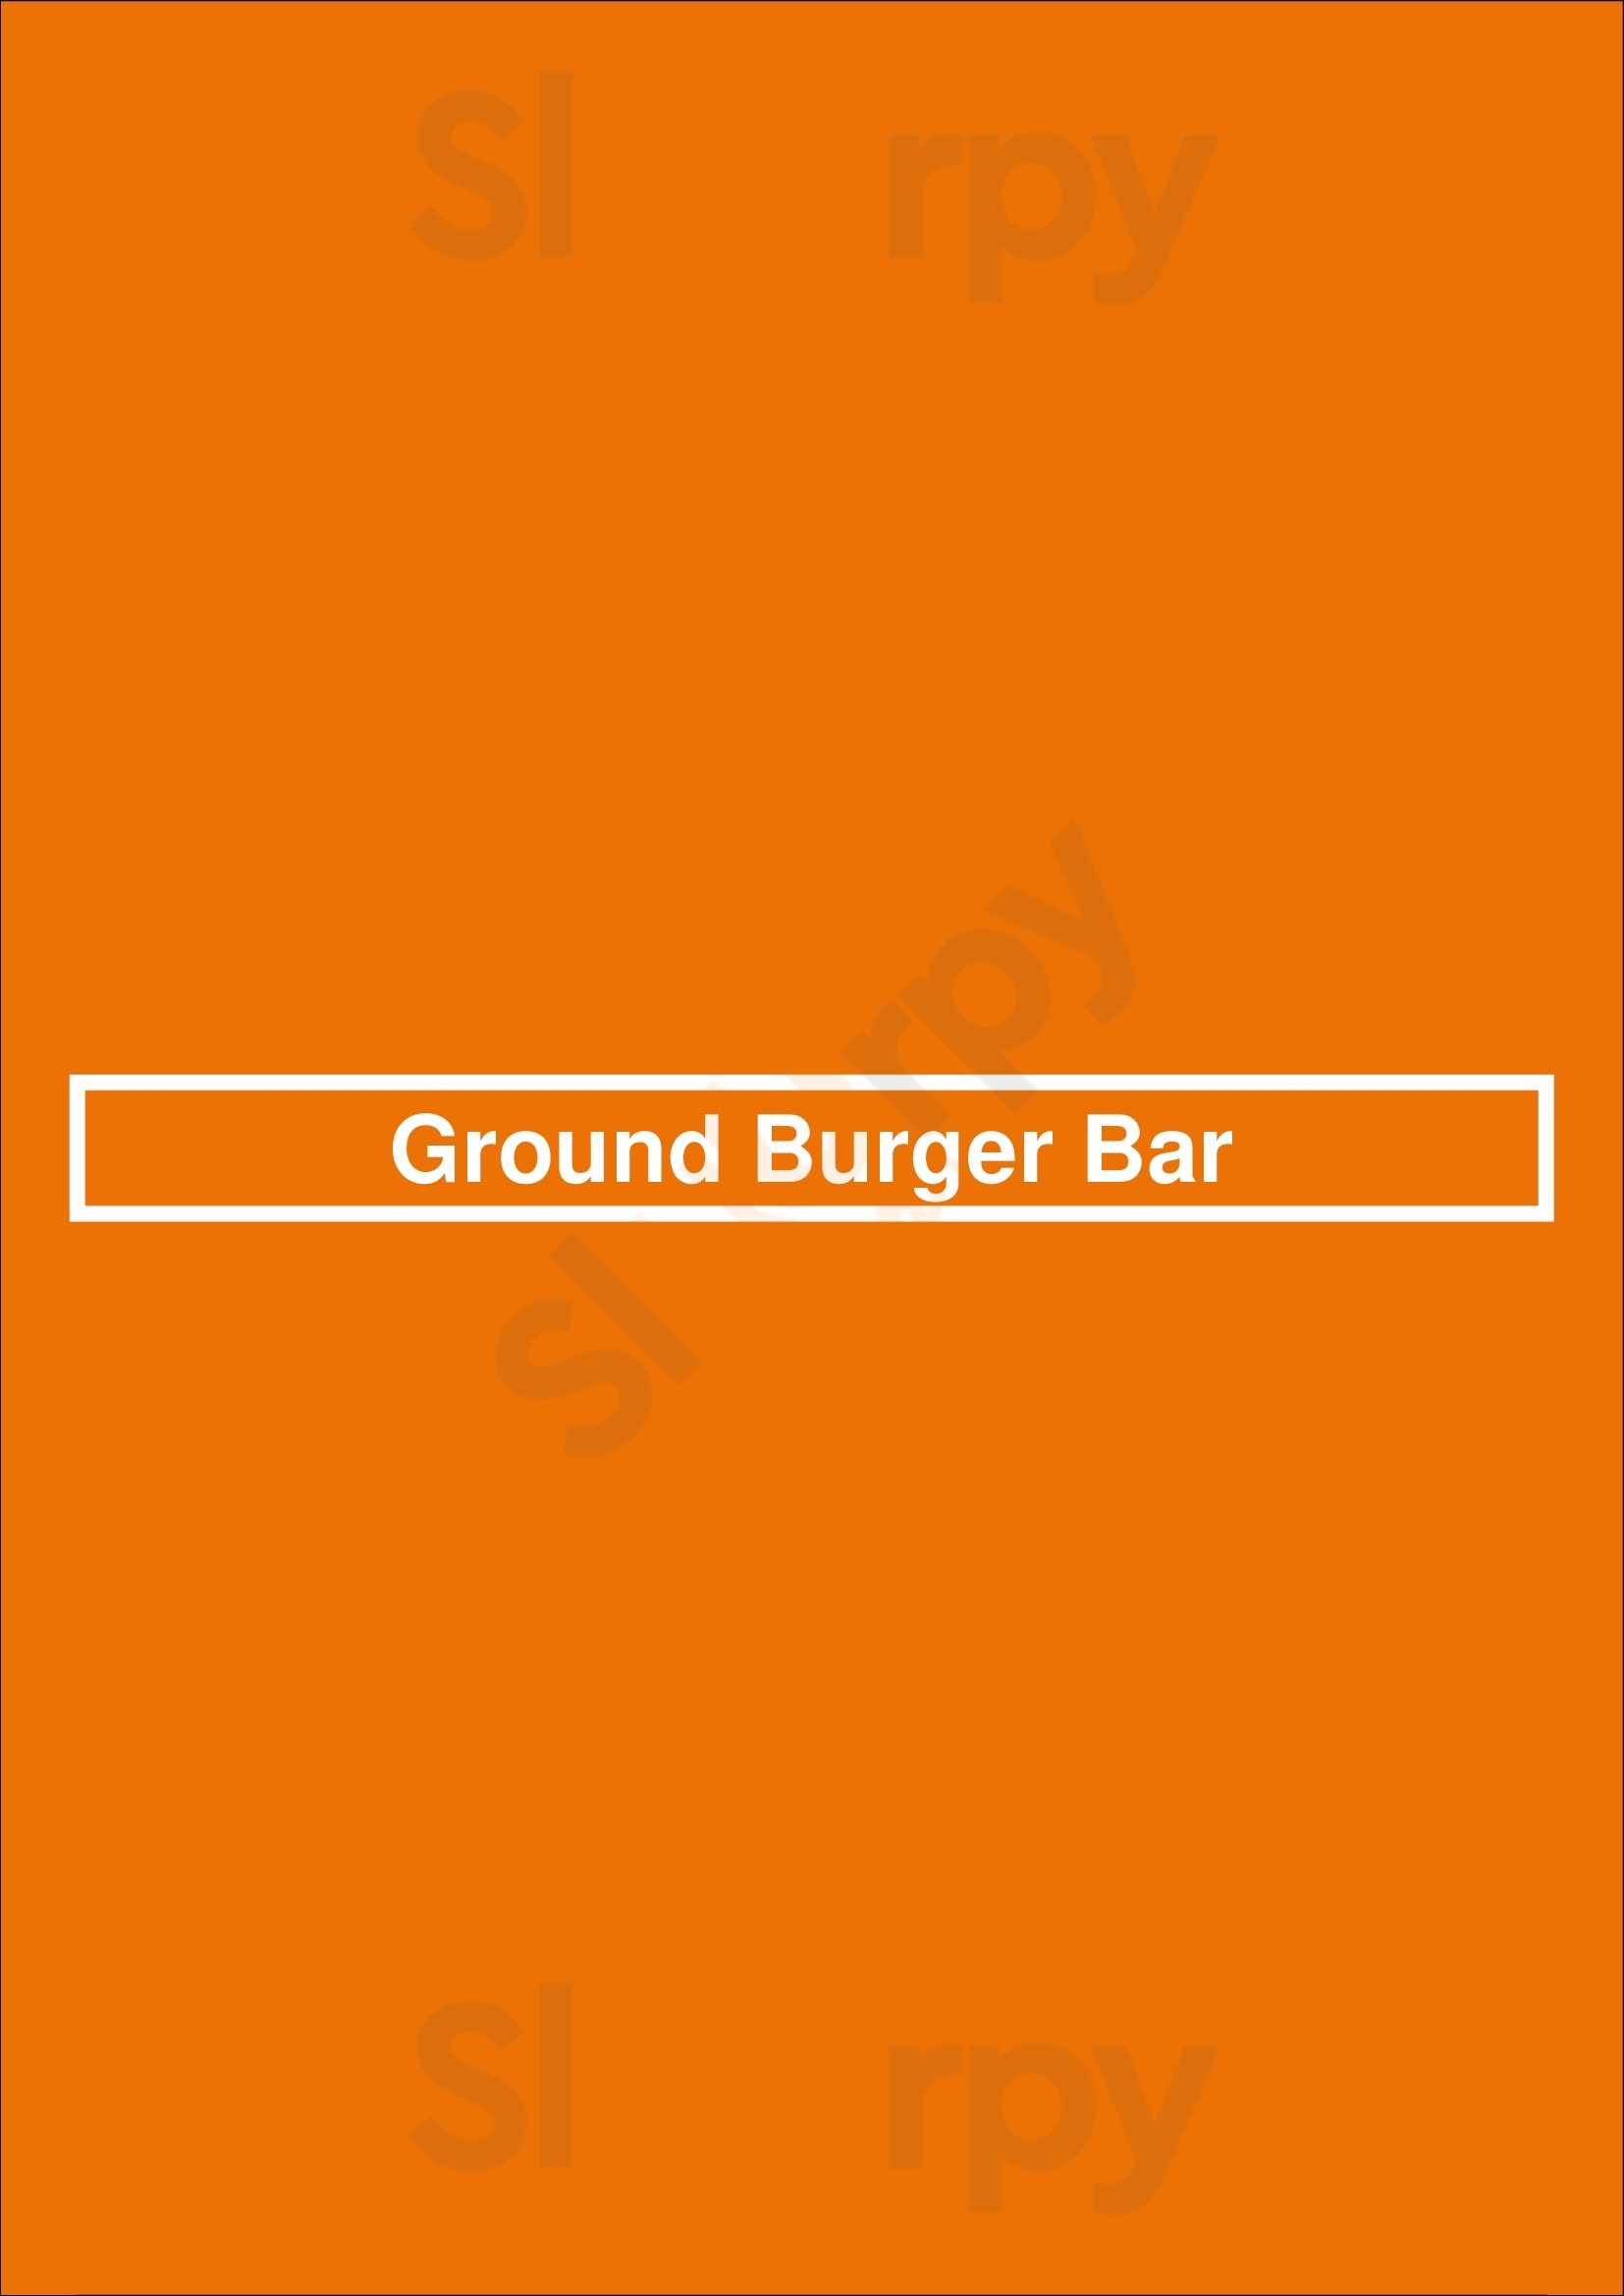 Ground Burger Bar Newmarket Menu - 1